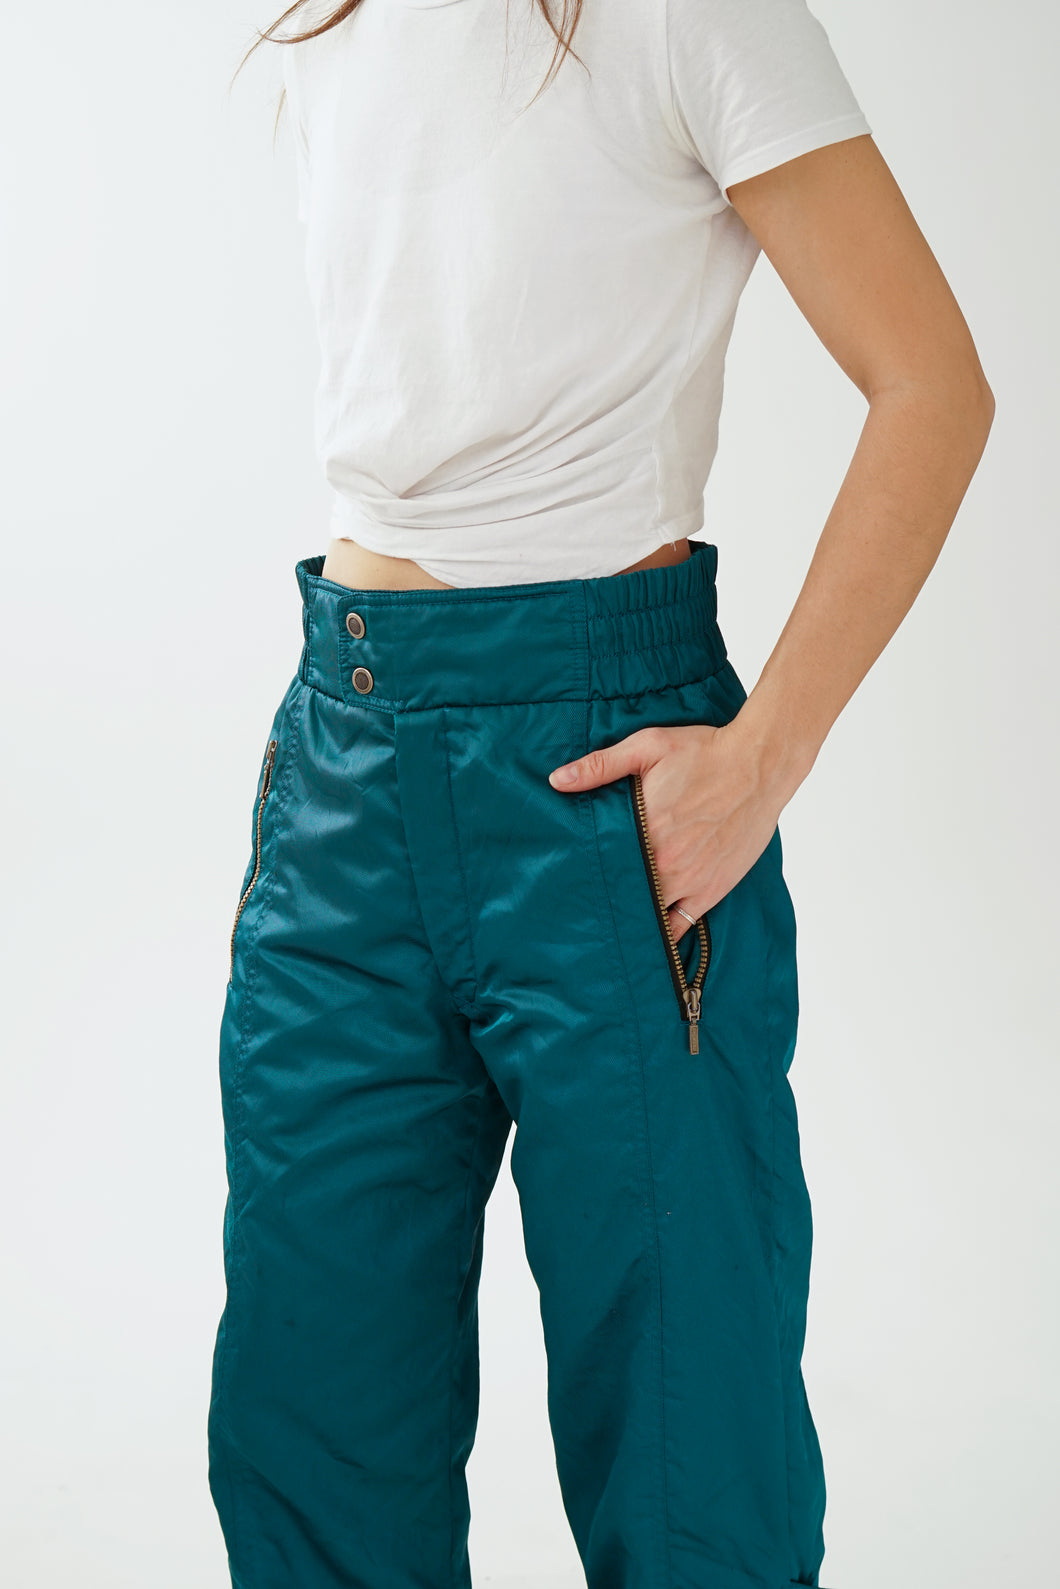 Pantalon de neige vintage Schneider turquoise métallique taille 32